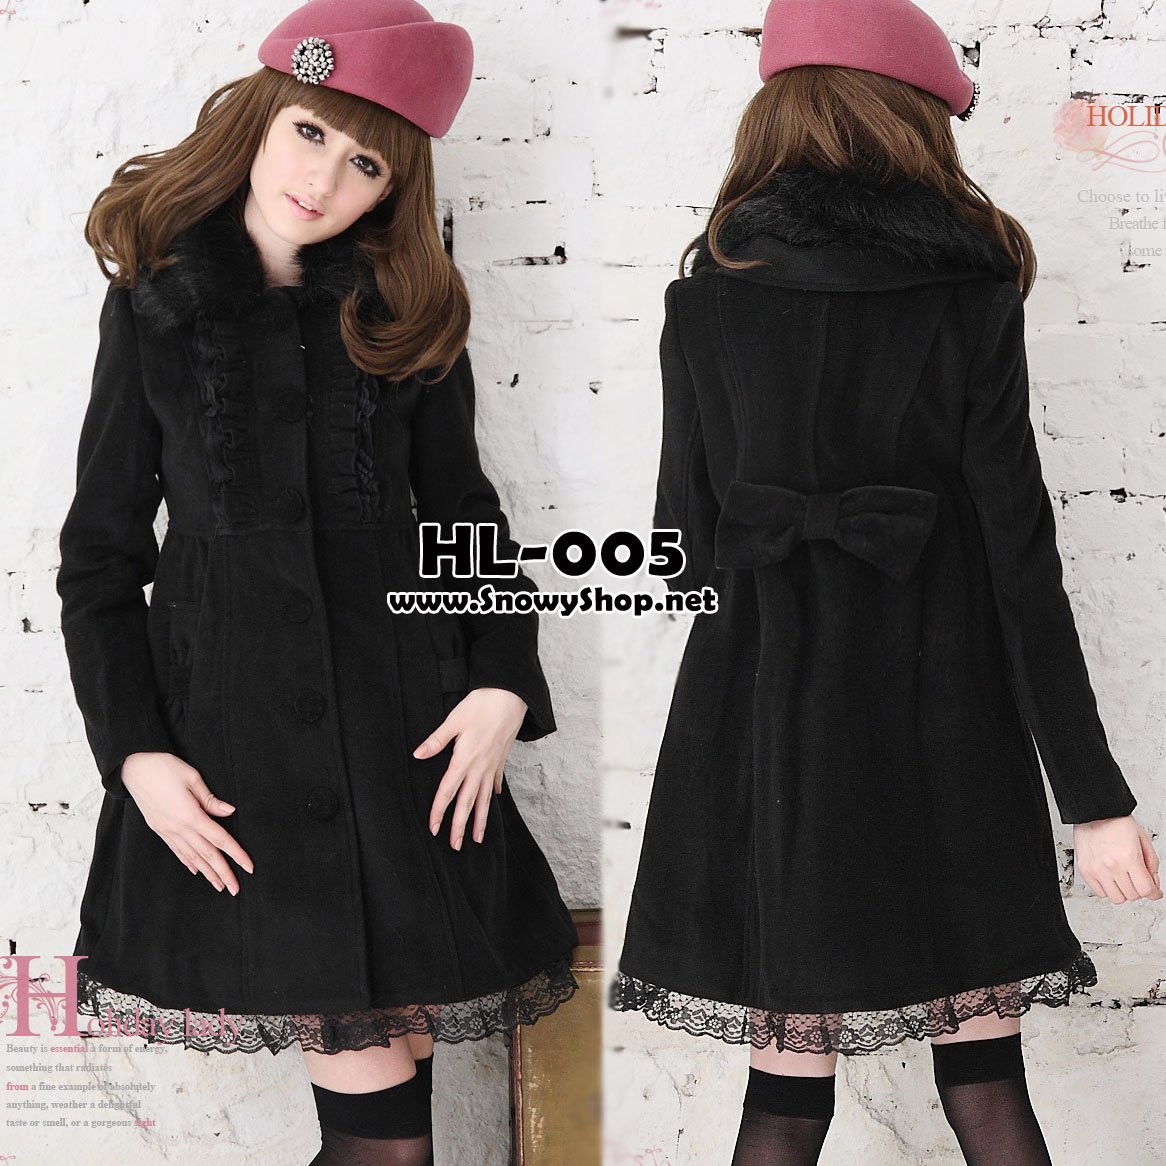  [[*พร้อมส่ง S,M,L]] [Coat] [HL-005] Holiday lady เสื้อโค้ทกันหนาวสีดำผ้าวูลหนา ปกคอขนเฟอร์ถอดออกได้ ปลายกระโปงต่อผ้าลูกไม้น่ารัก